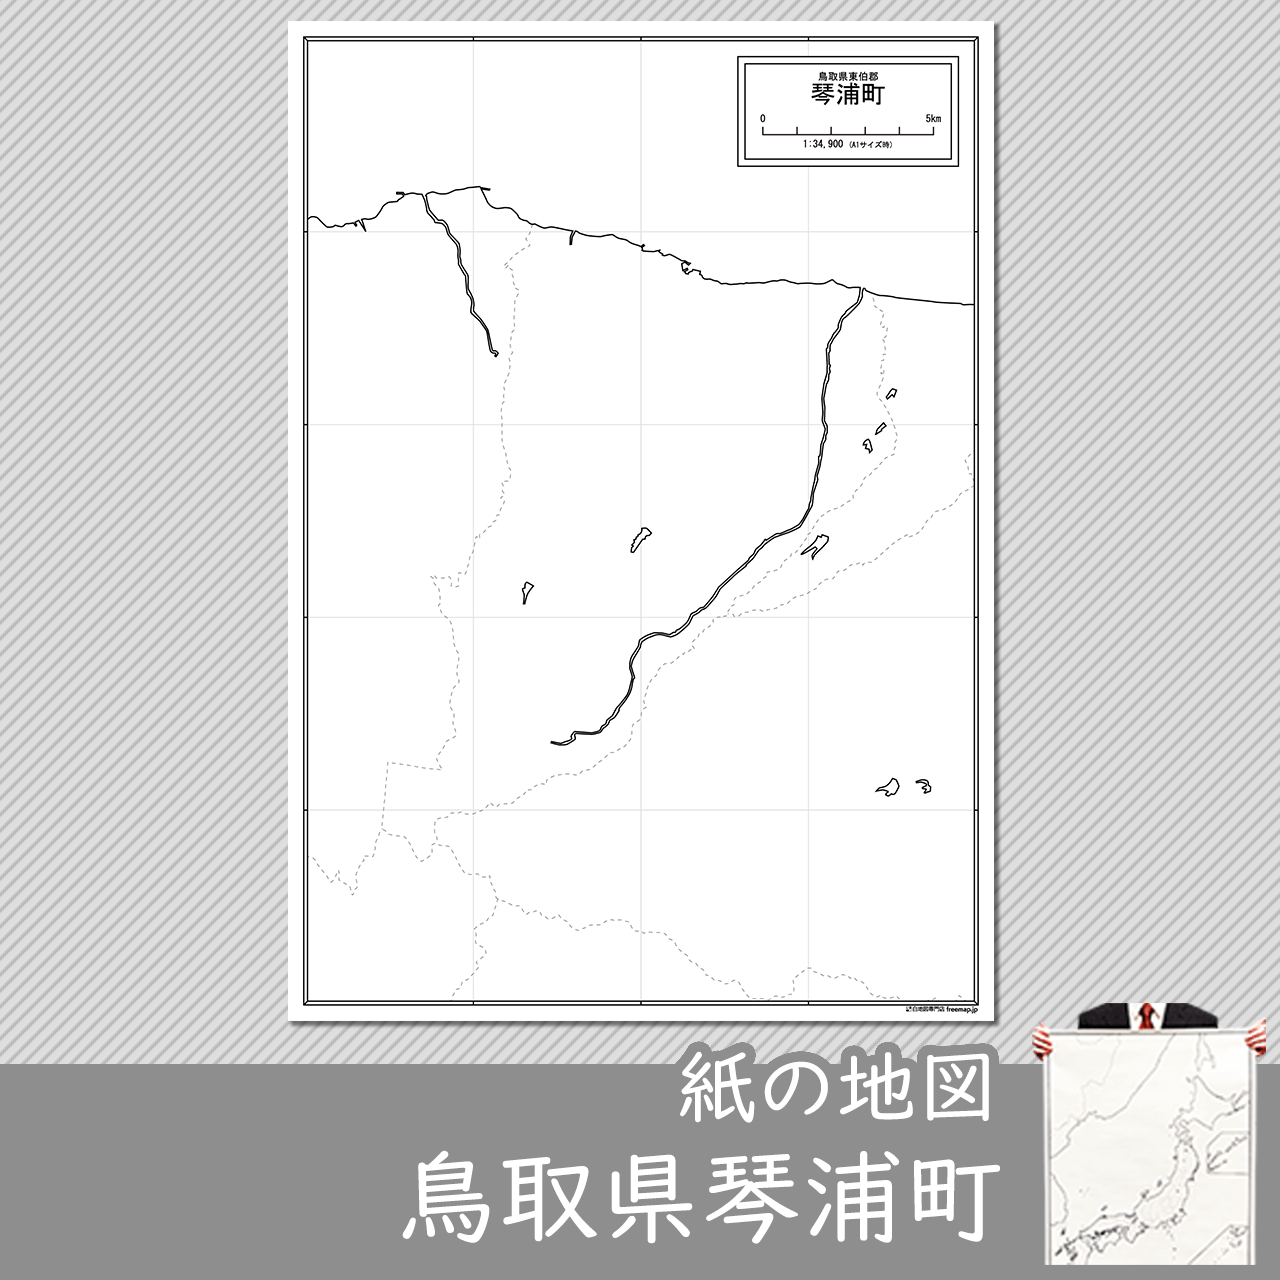 琴浦町の紙の白地図のサムネイル